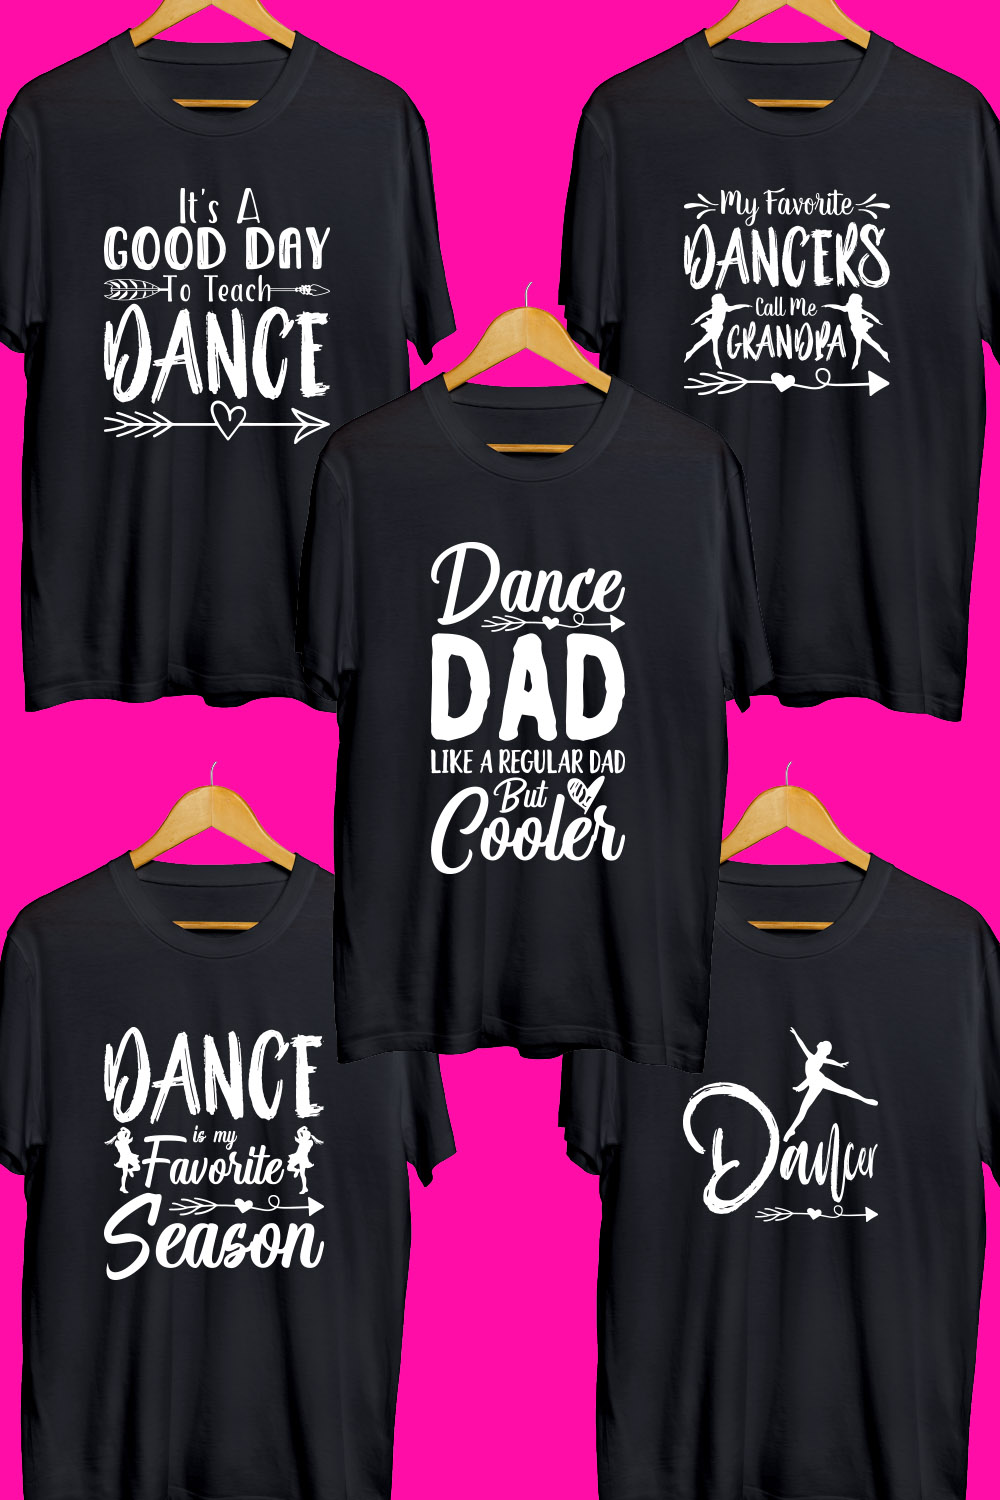 Dance SVG T Shirt Designs Bundle pinterest preview image.